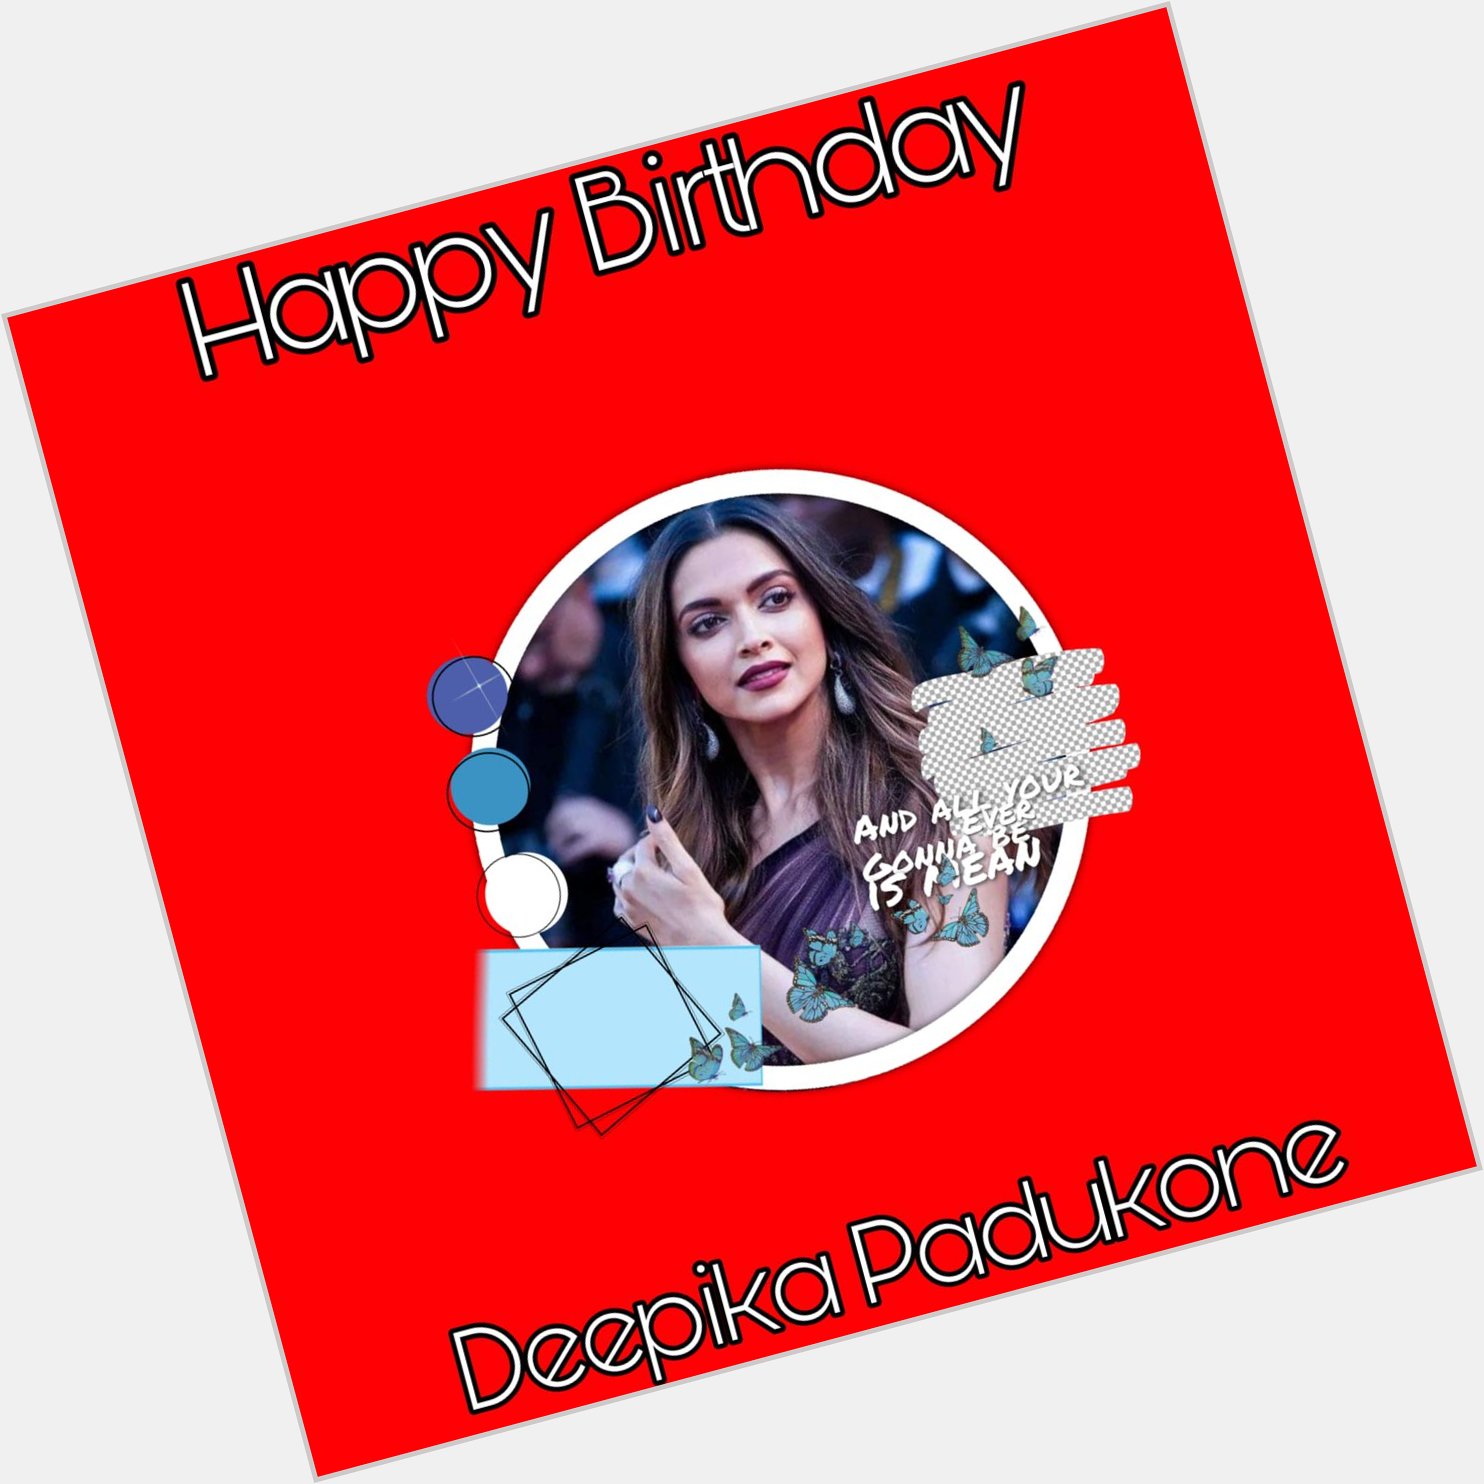 Happy Birthday
Deepika padukone   